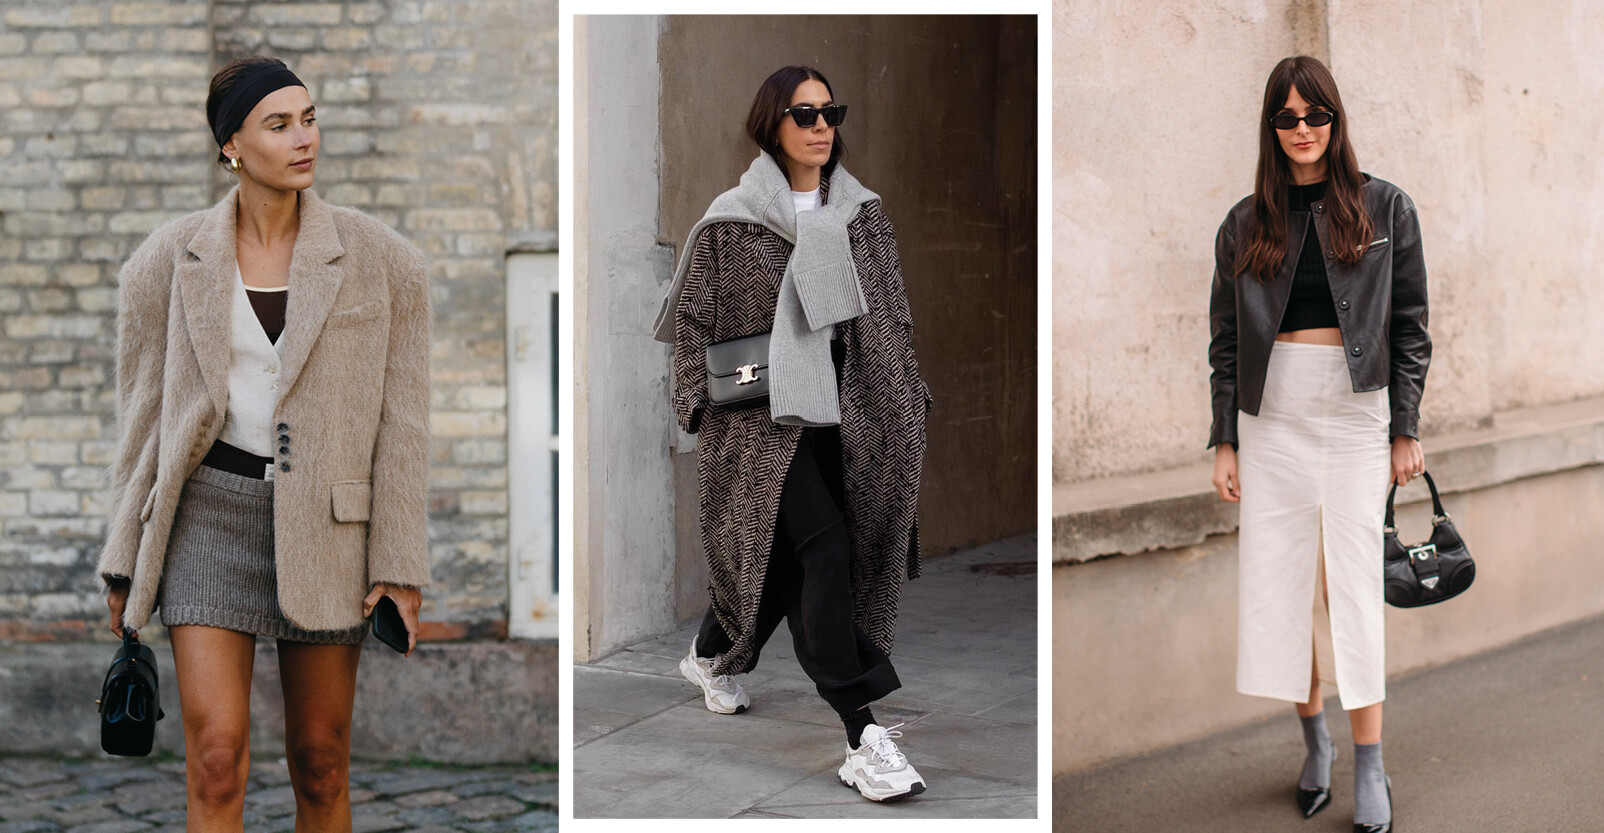 fashion trends streetwear rok jasje colbert trui sweater vrouwen op straat